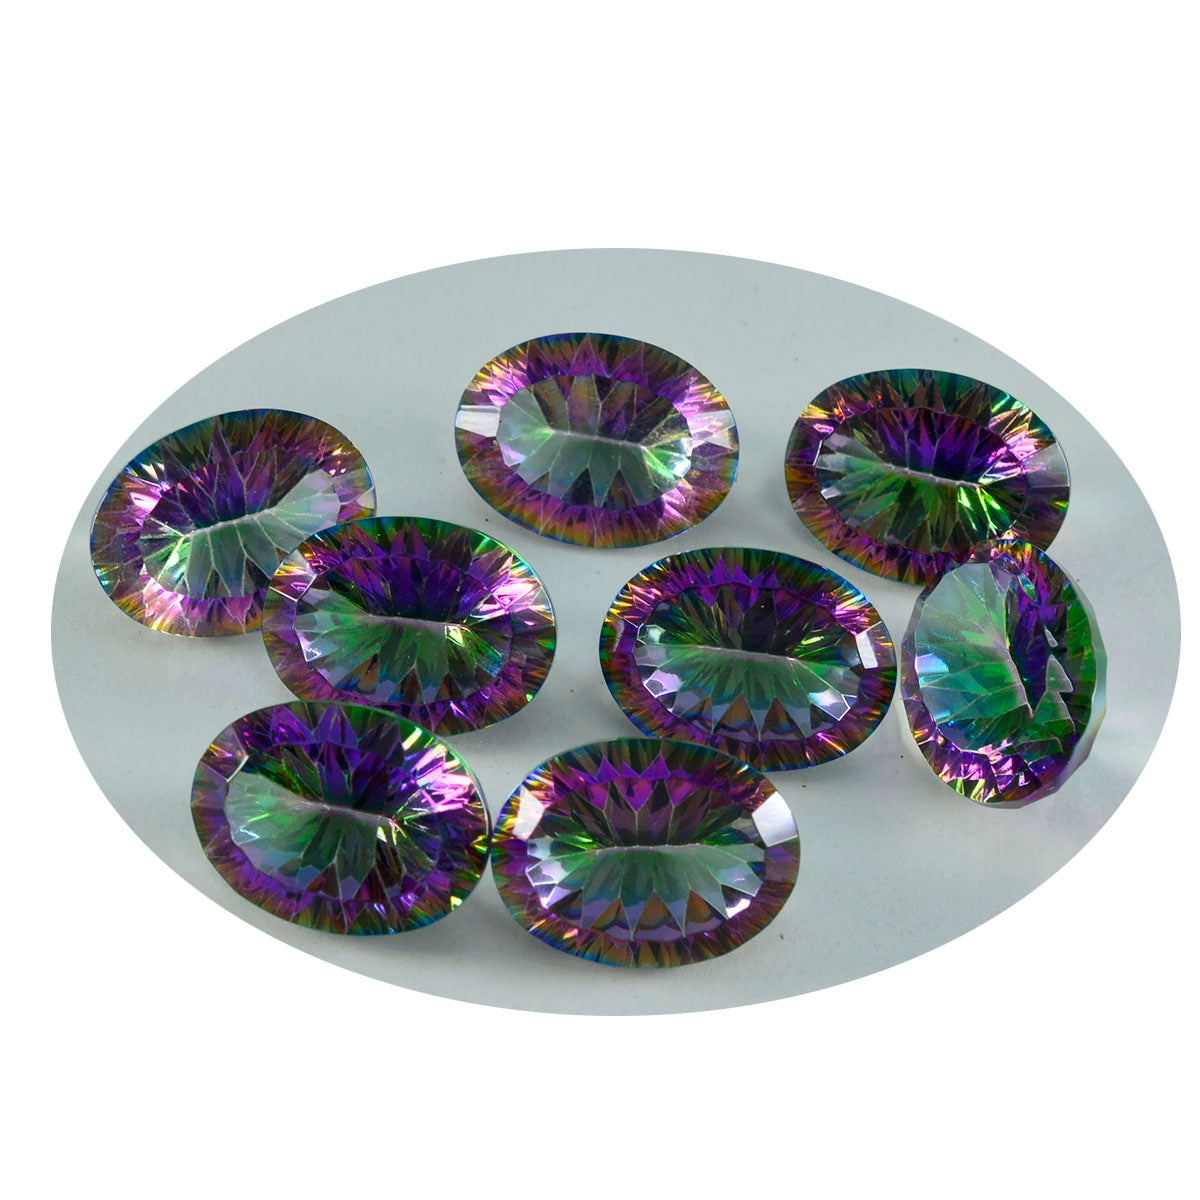 Riyogems 1 pièce de quartz mystique multicolore à facettes 10x14mm forme ovale belle qualité gemme en vrac